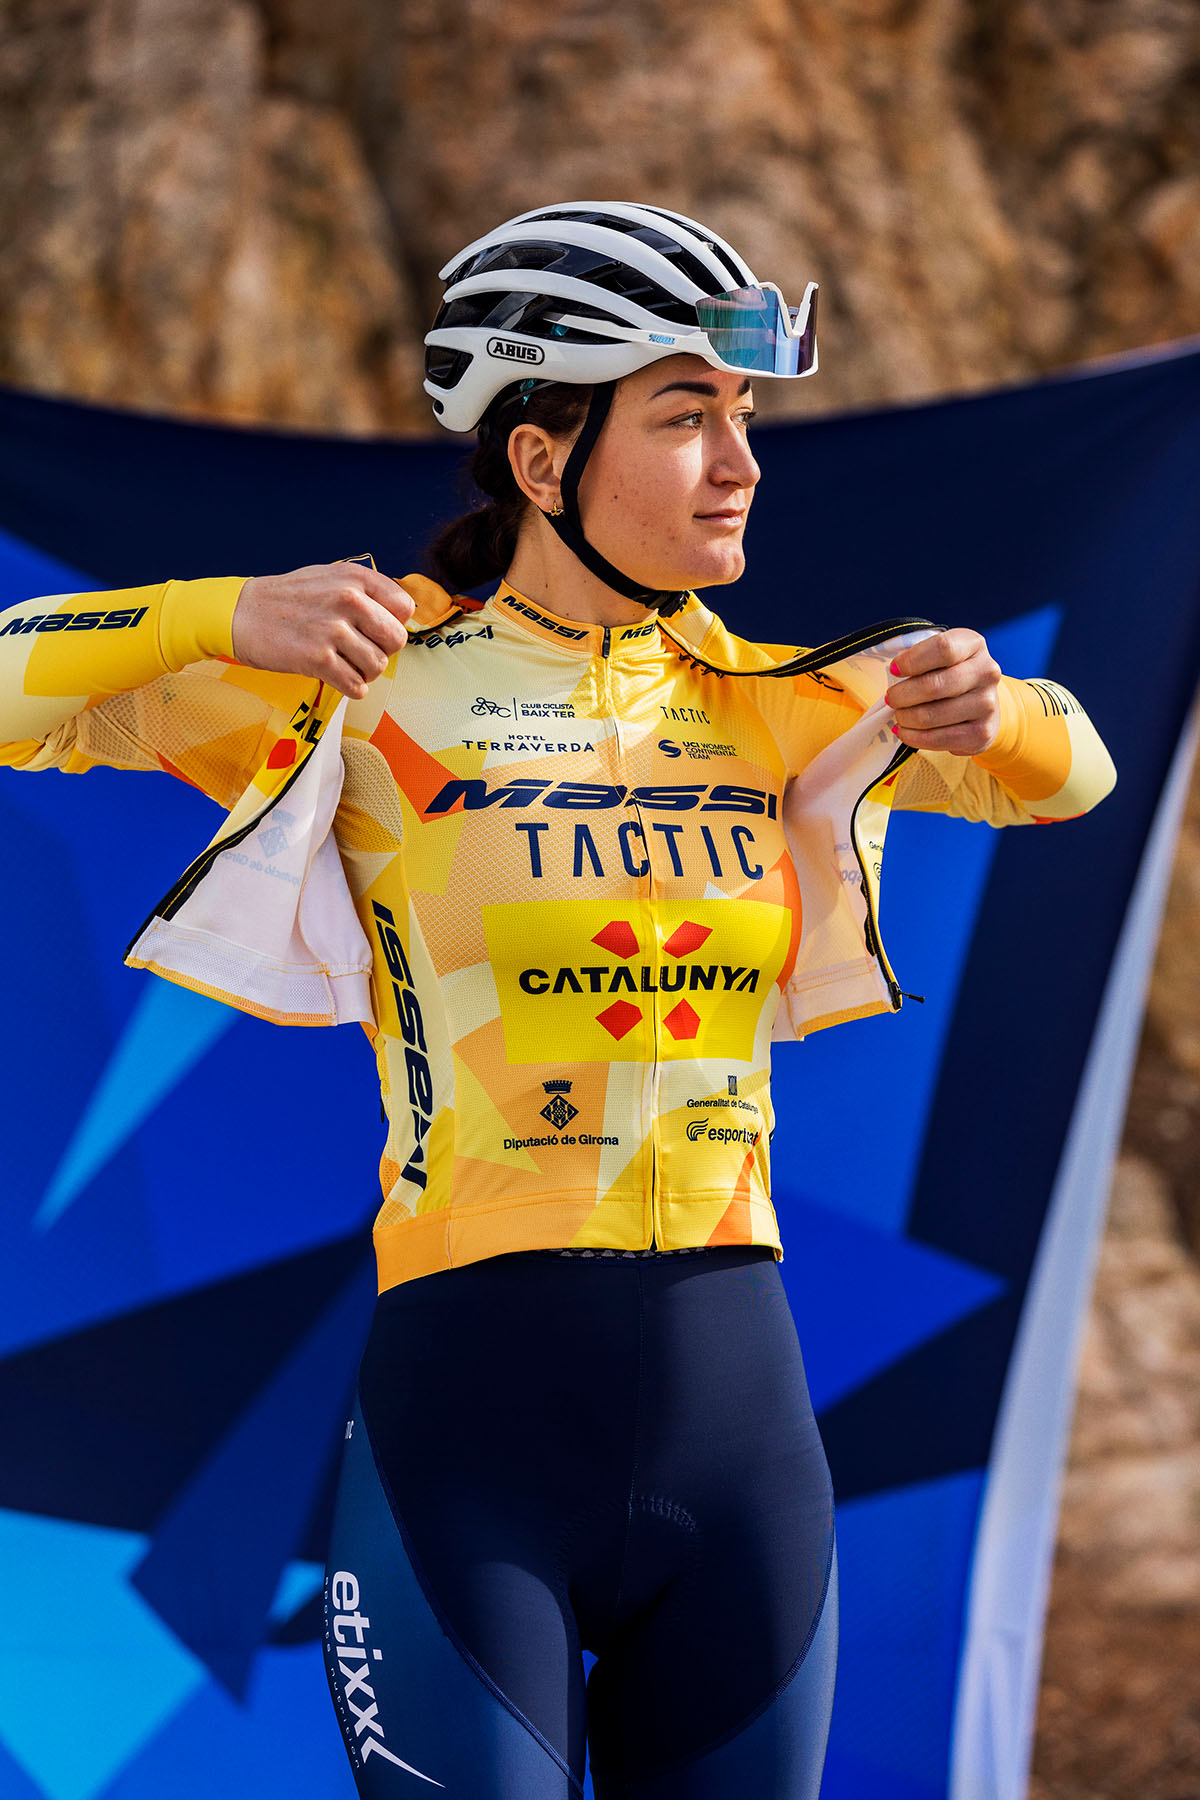 Le nouveau maillot 2023 pour l'équipe féminine UCI Massi-Tactic